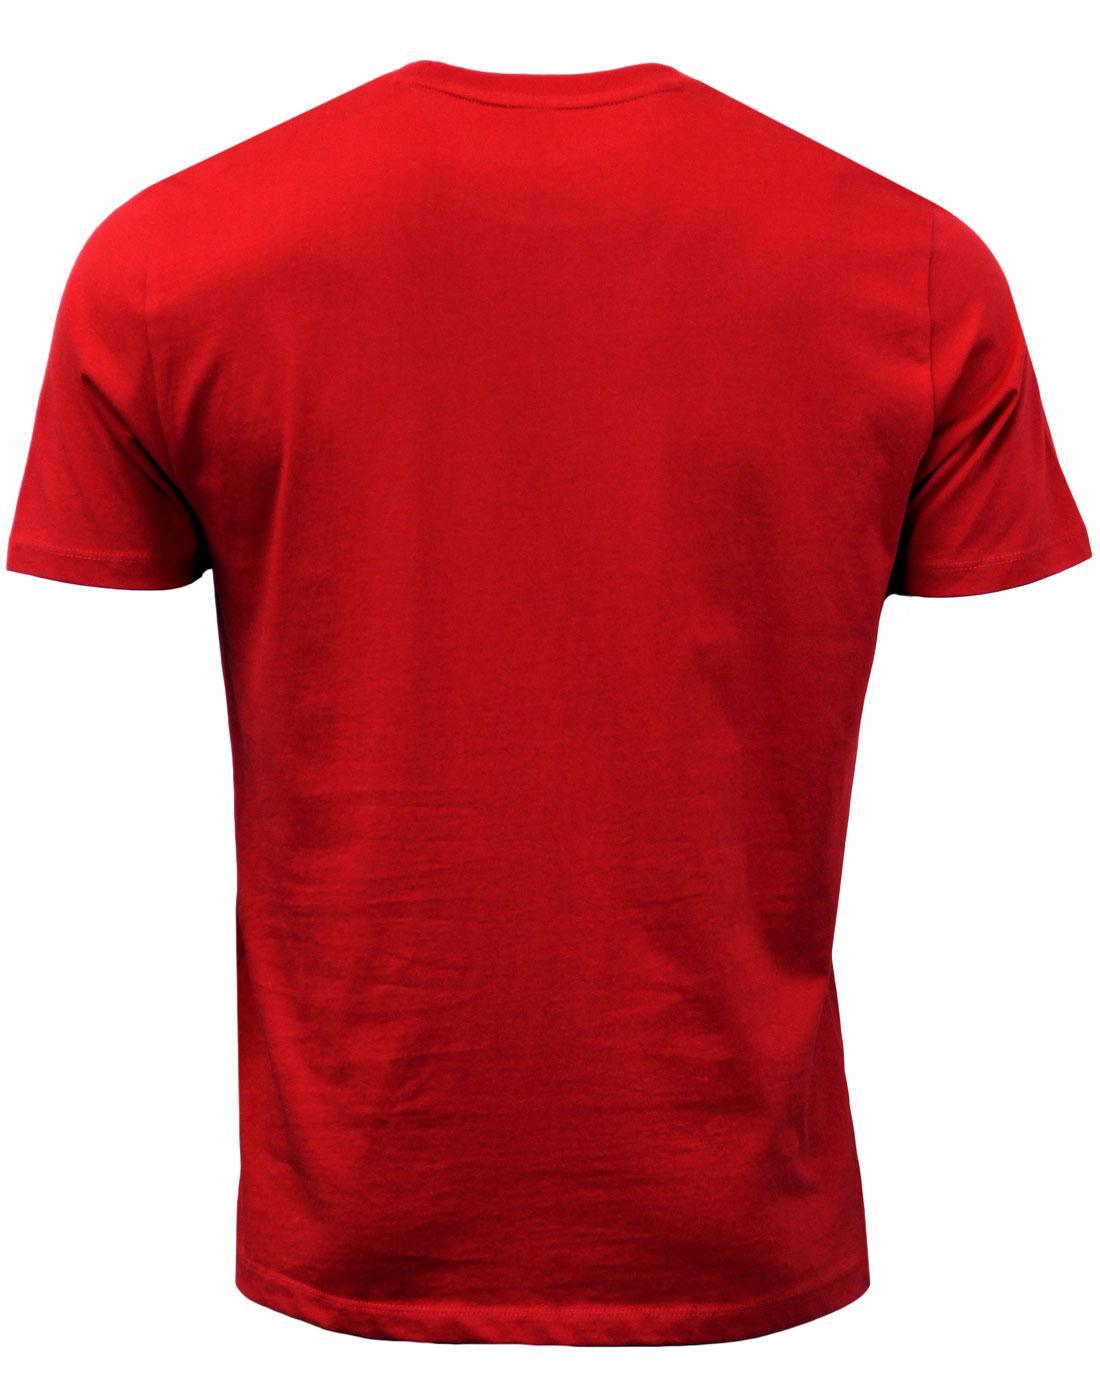 BEN SHERMAN Keith Moon Mod Target T-Shirt RED